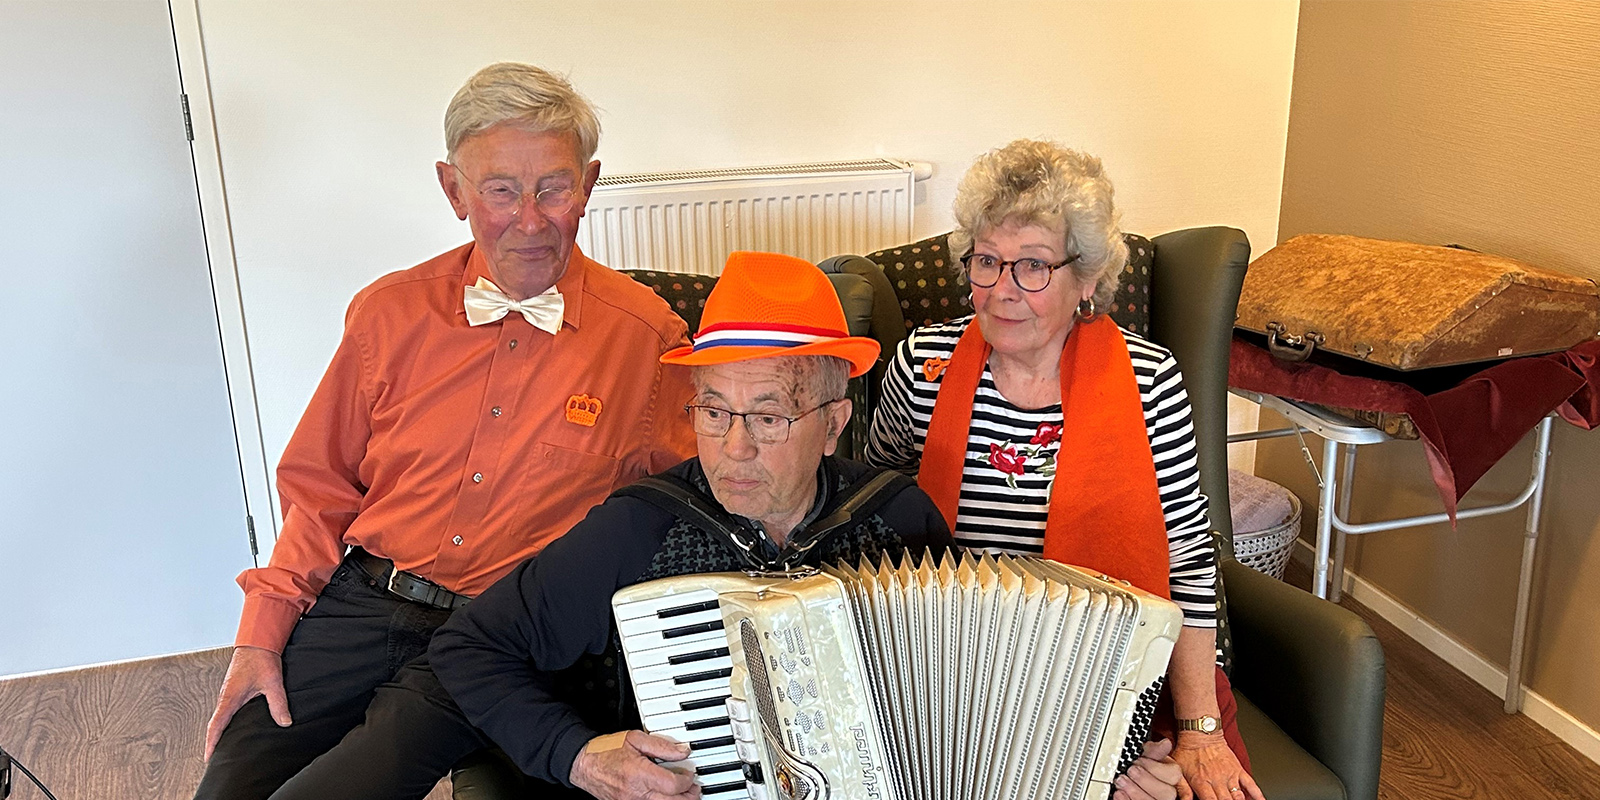 Vrijwilligers zijn onmisbaar in de zorg voor dementie. Hier de drie muziekvrijwilligers, met in het midden de accordeonspeler wiens jas verdween.